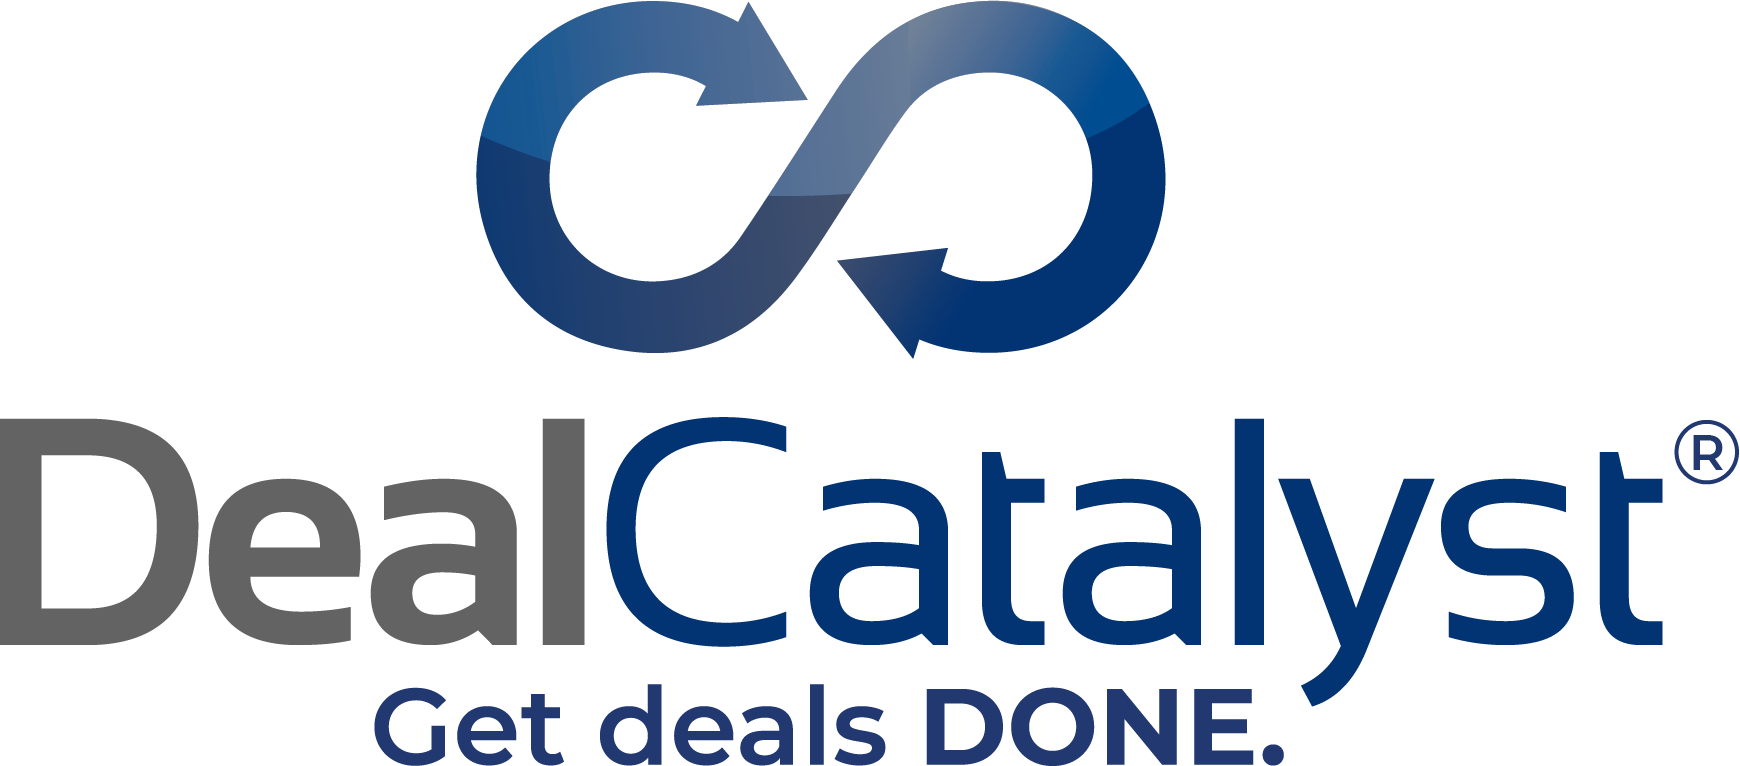 DealCatalyst logo